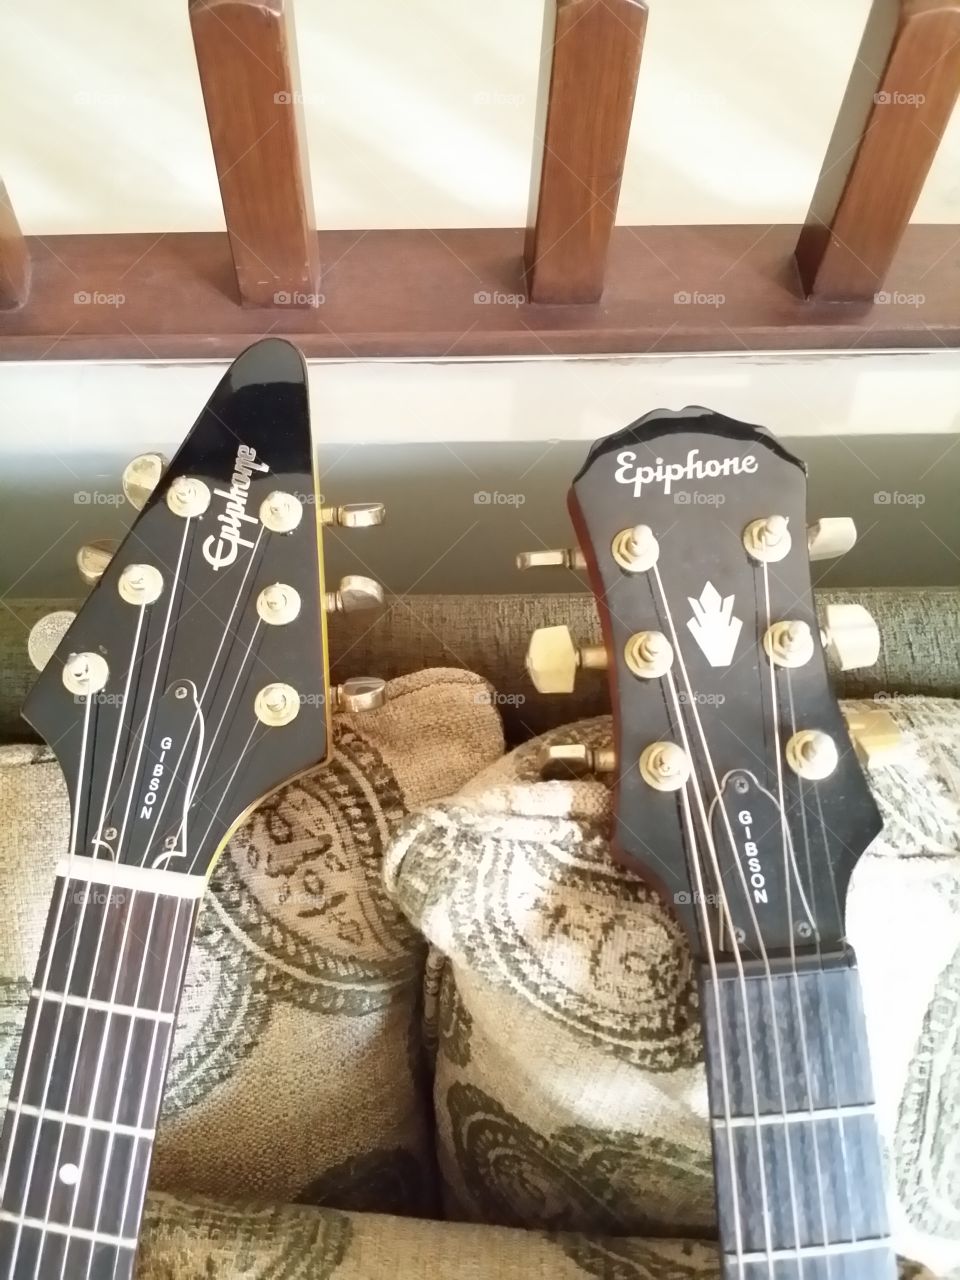 Epiphone guitar headstock